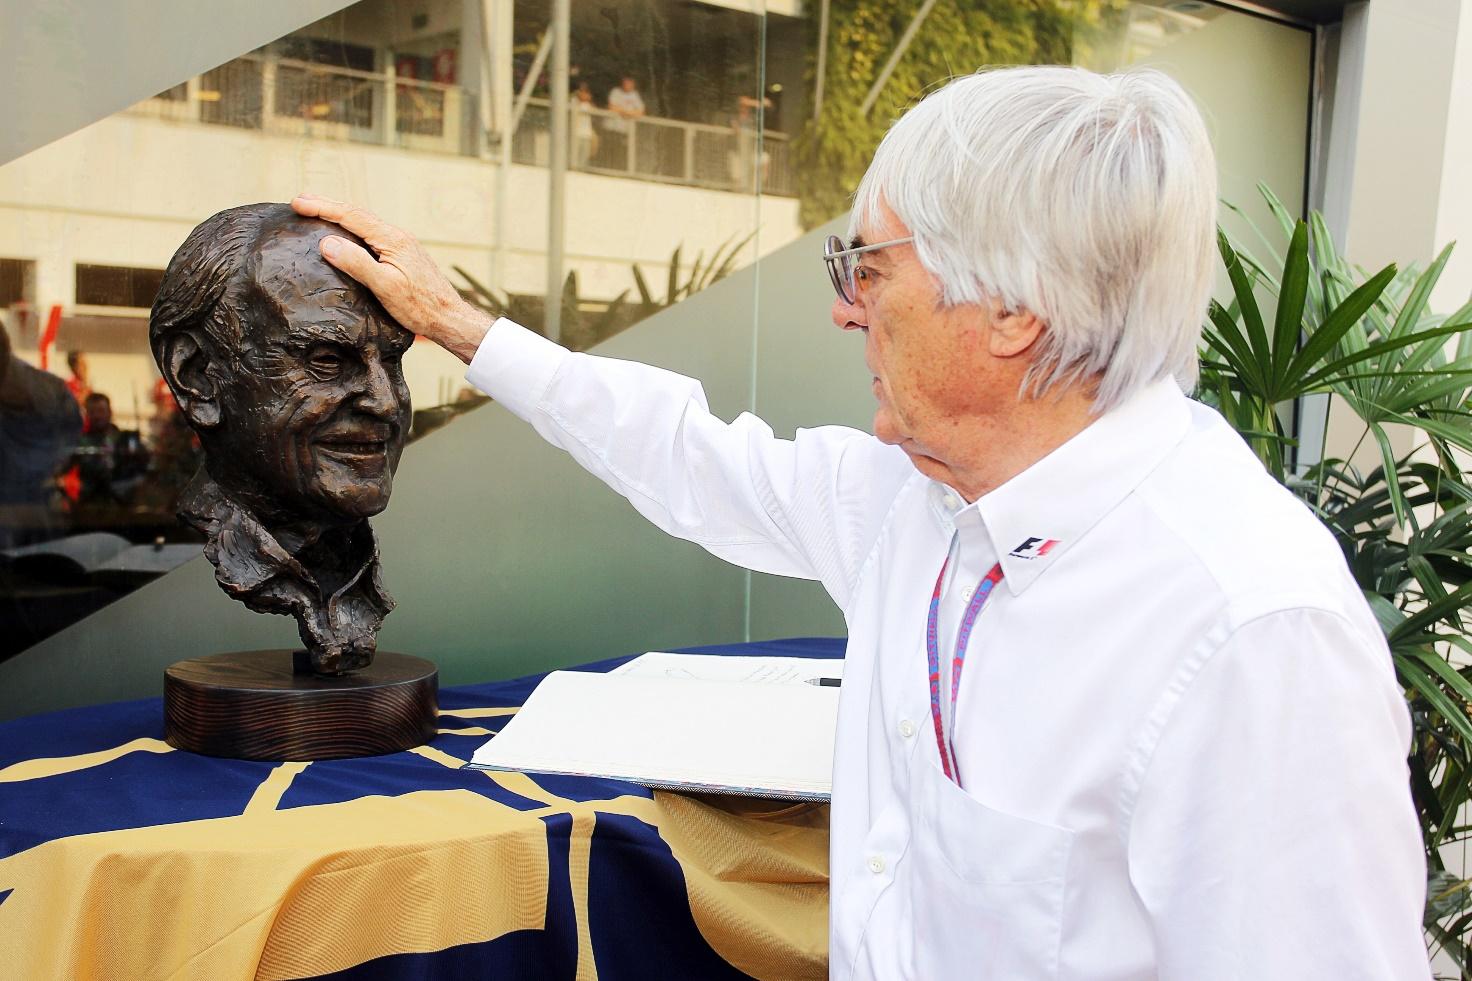 Bernie Ecclestone pays tribute to Sid Watkins in 2012.